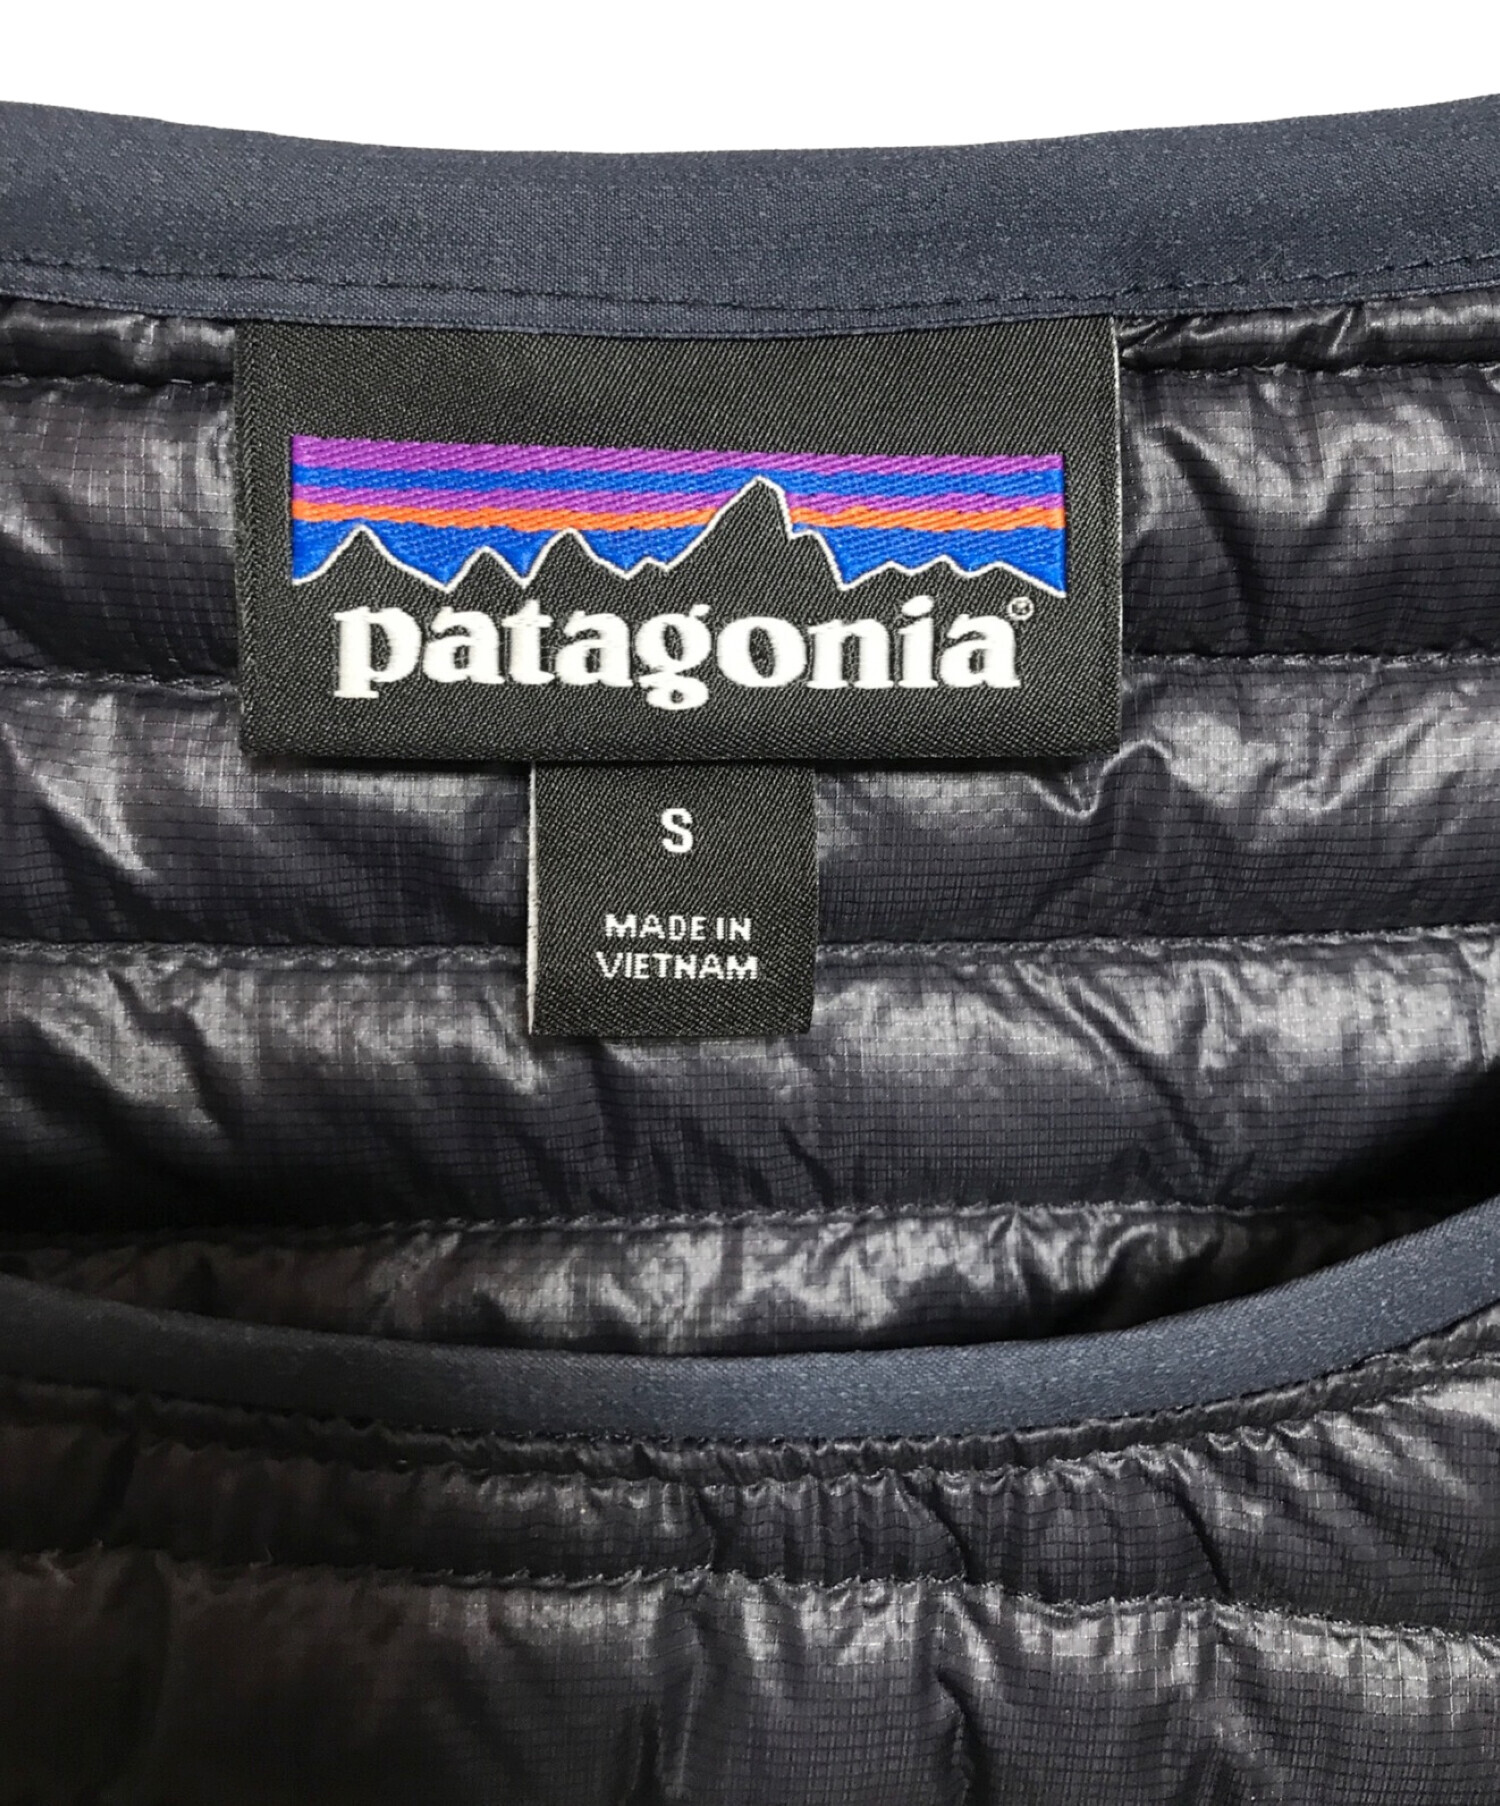 Patagonia (パタゴニア) ウルトラアルパイン・ダウン・クルー ネイビー サイズ:S